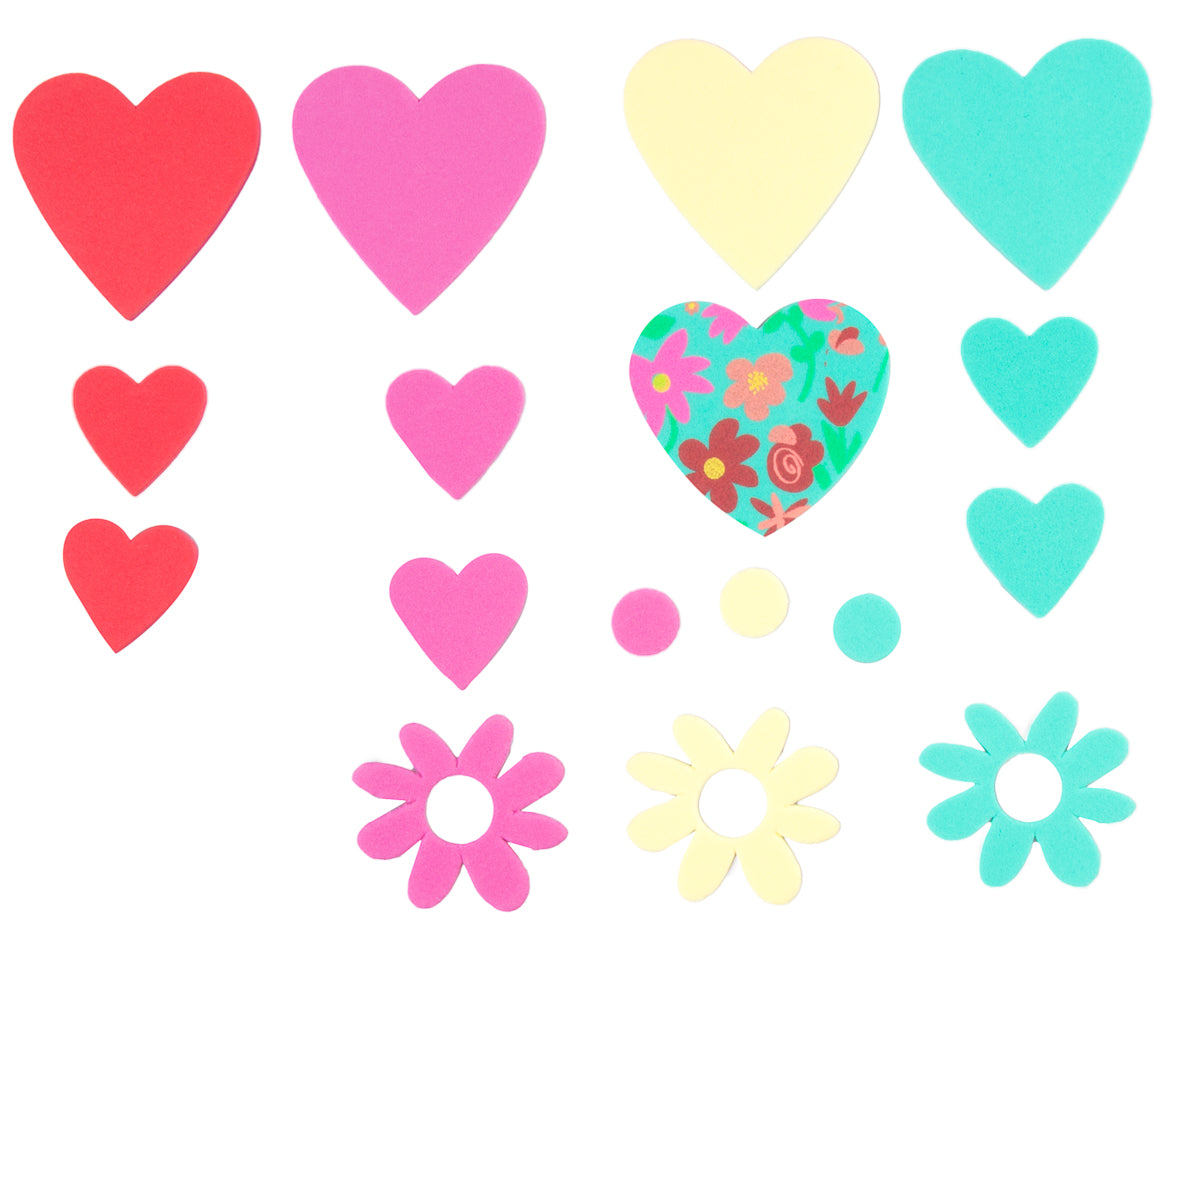 Jumbo Hearts & Flowers Foam Sticker Set - 150+ Stickers Total!